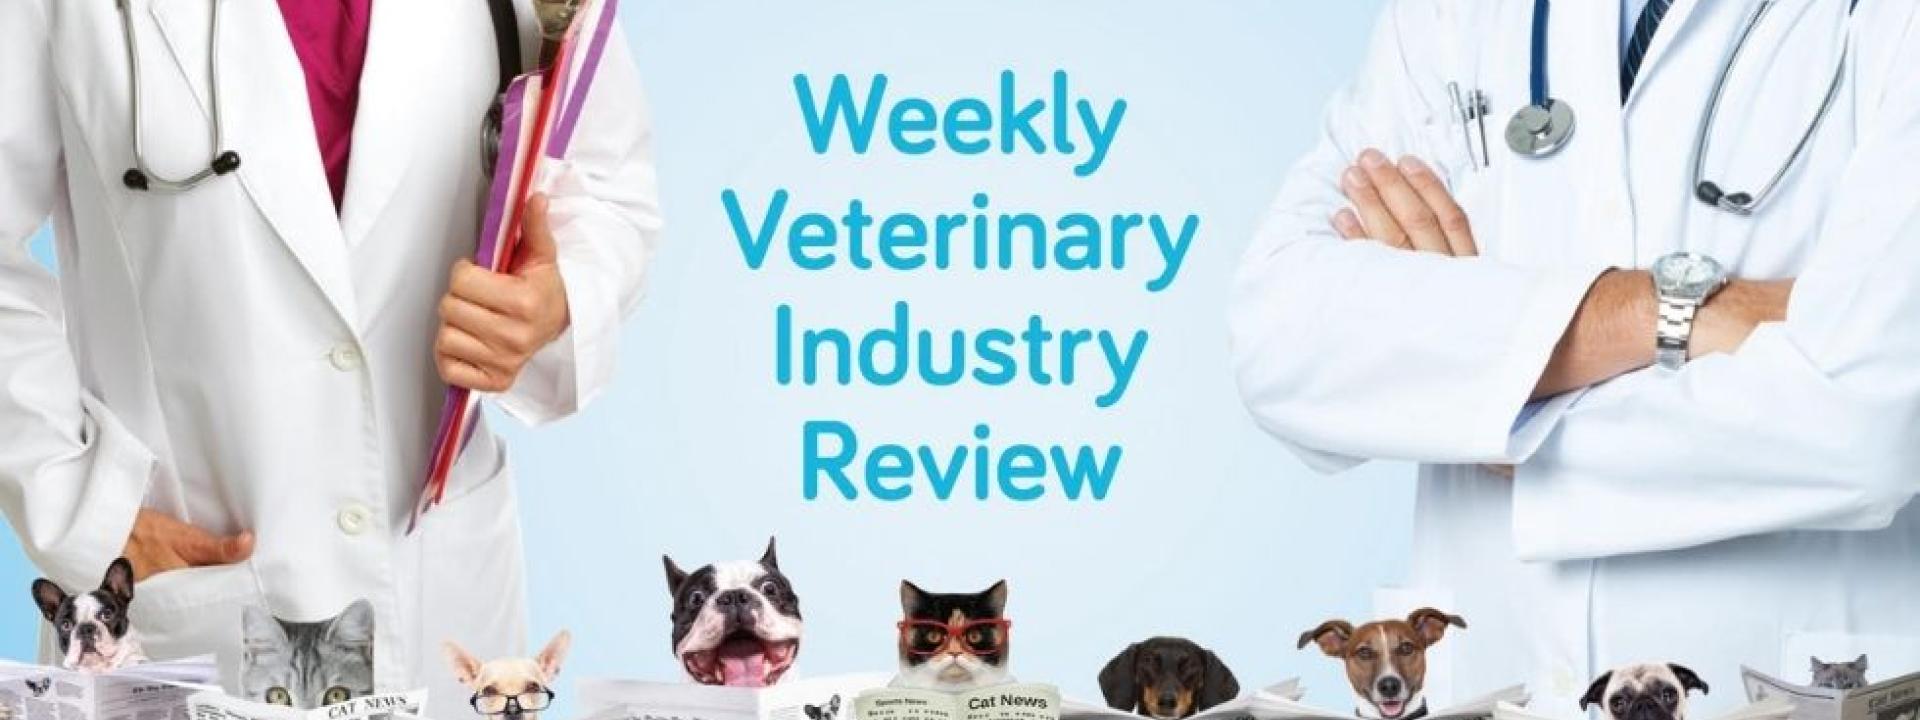 Week 6 of Weekly Veterinary Industry Review